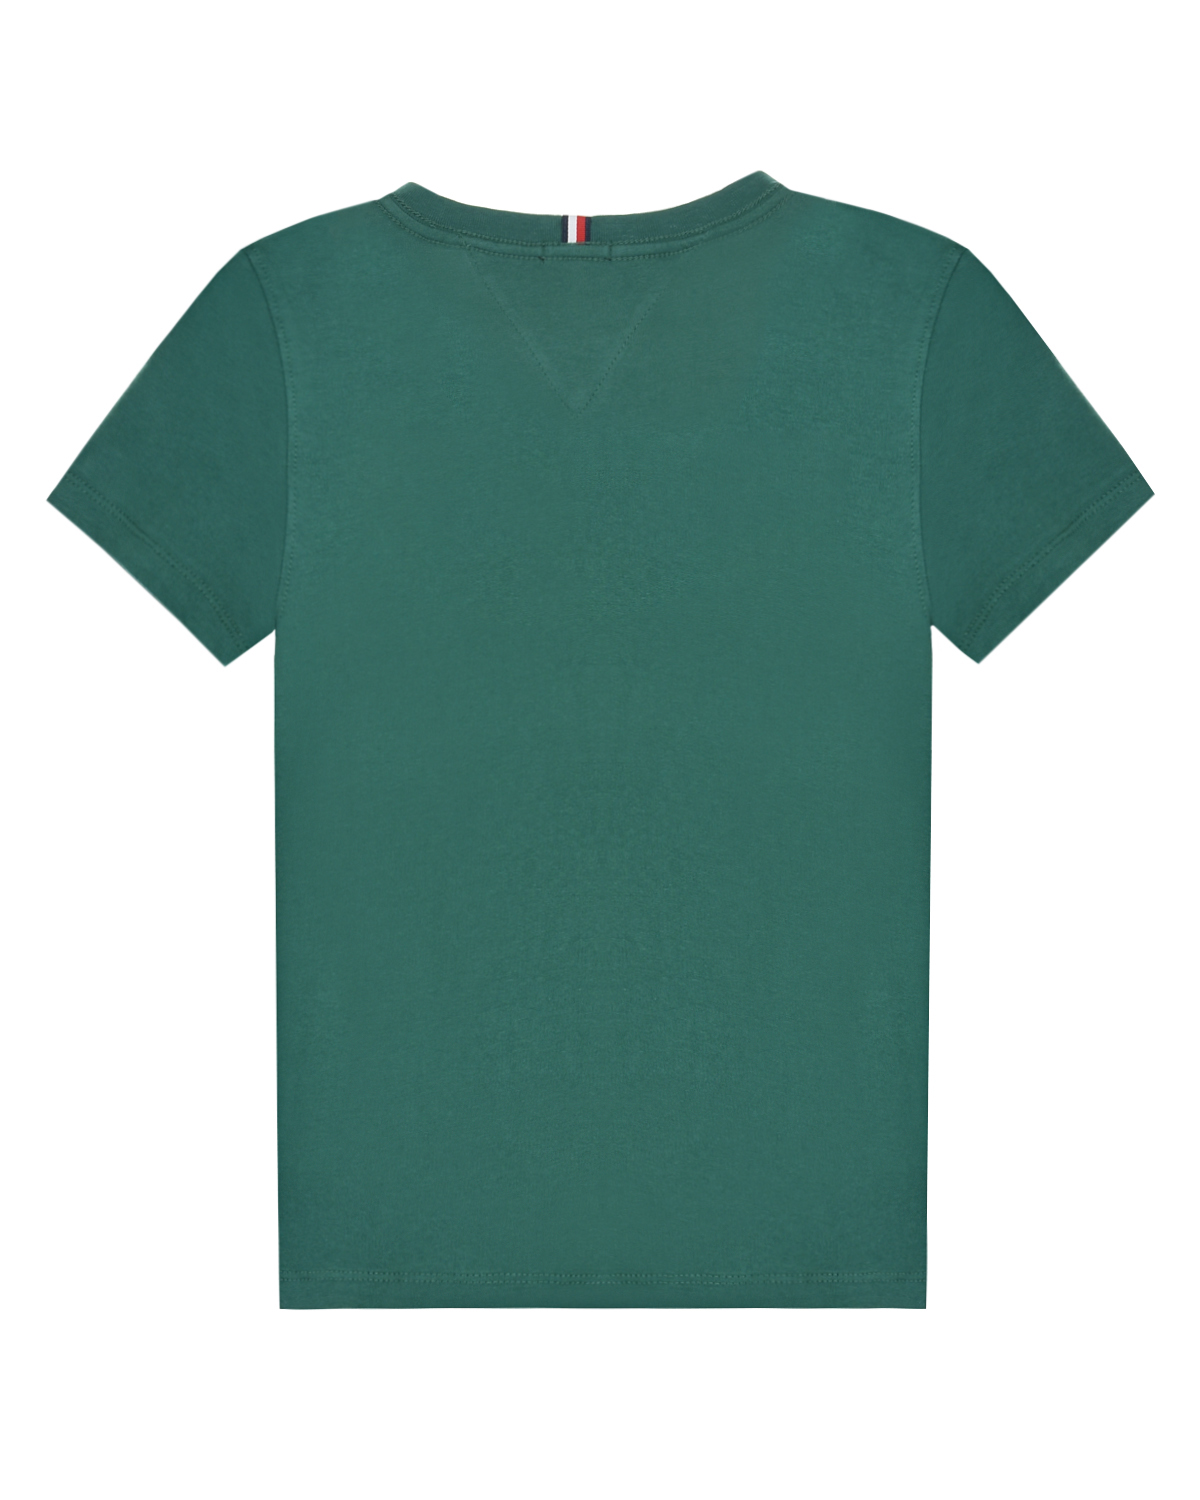 Зеленая футболка с логотипом Tommy Hilfiger детская, размер 116, цвет зеленый - фото 2